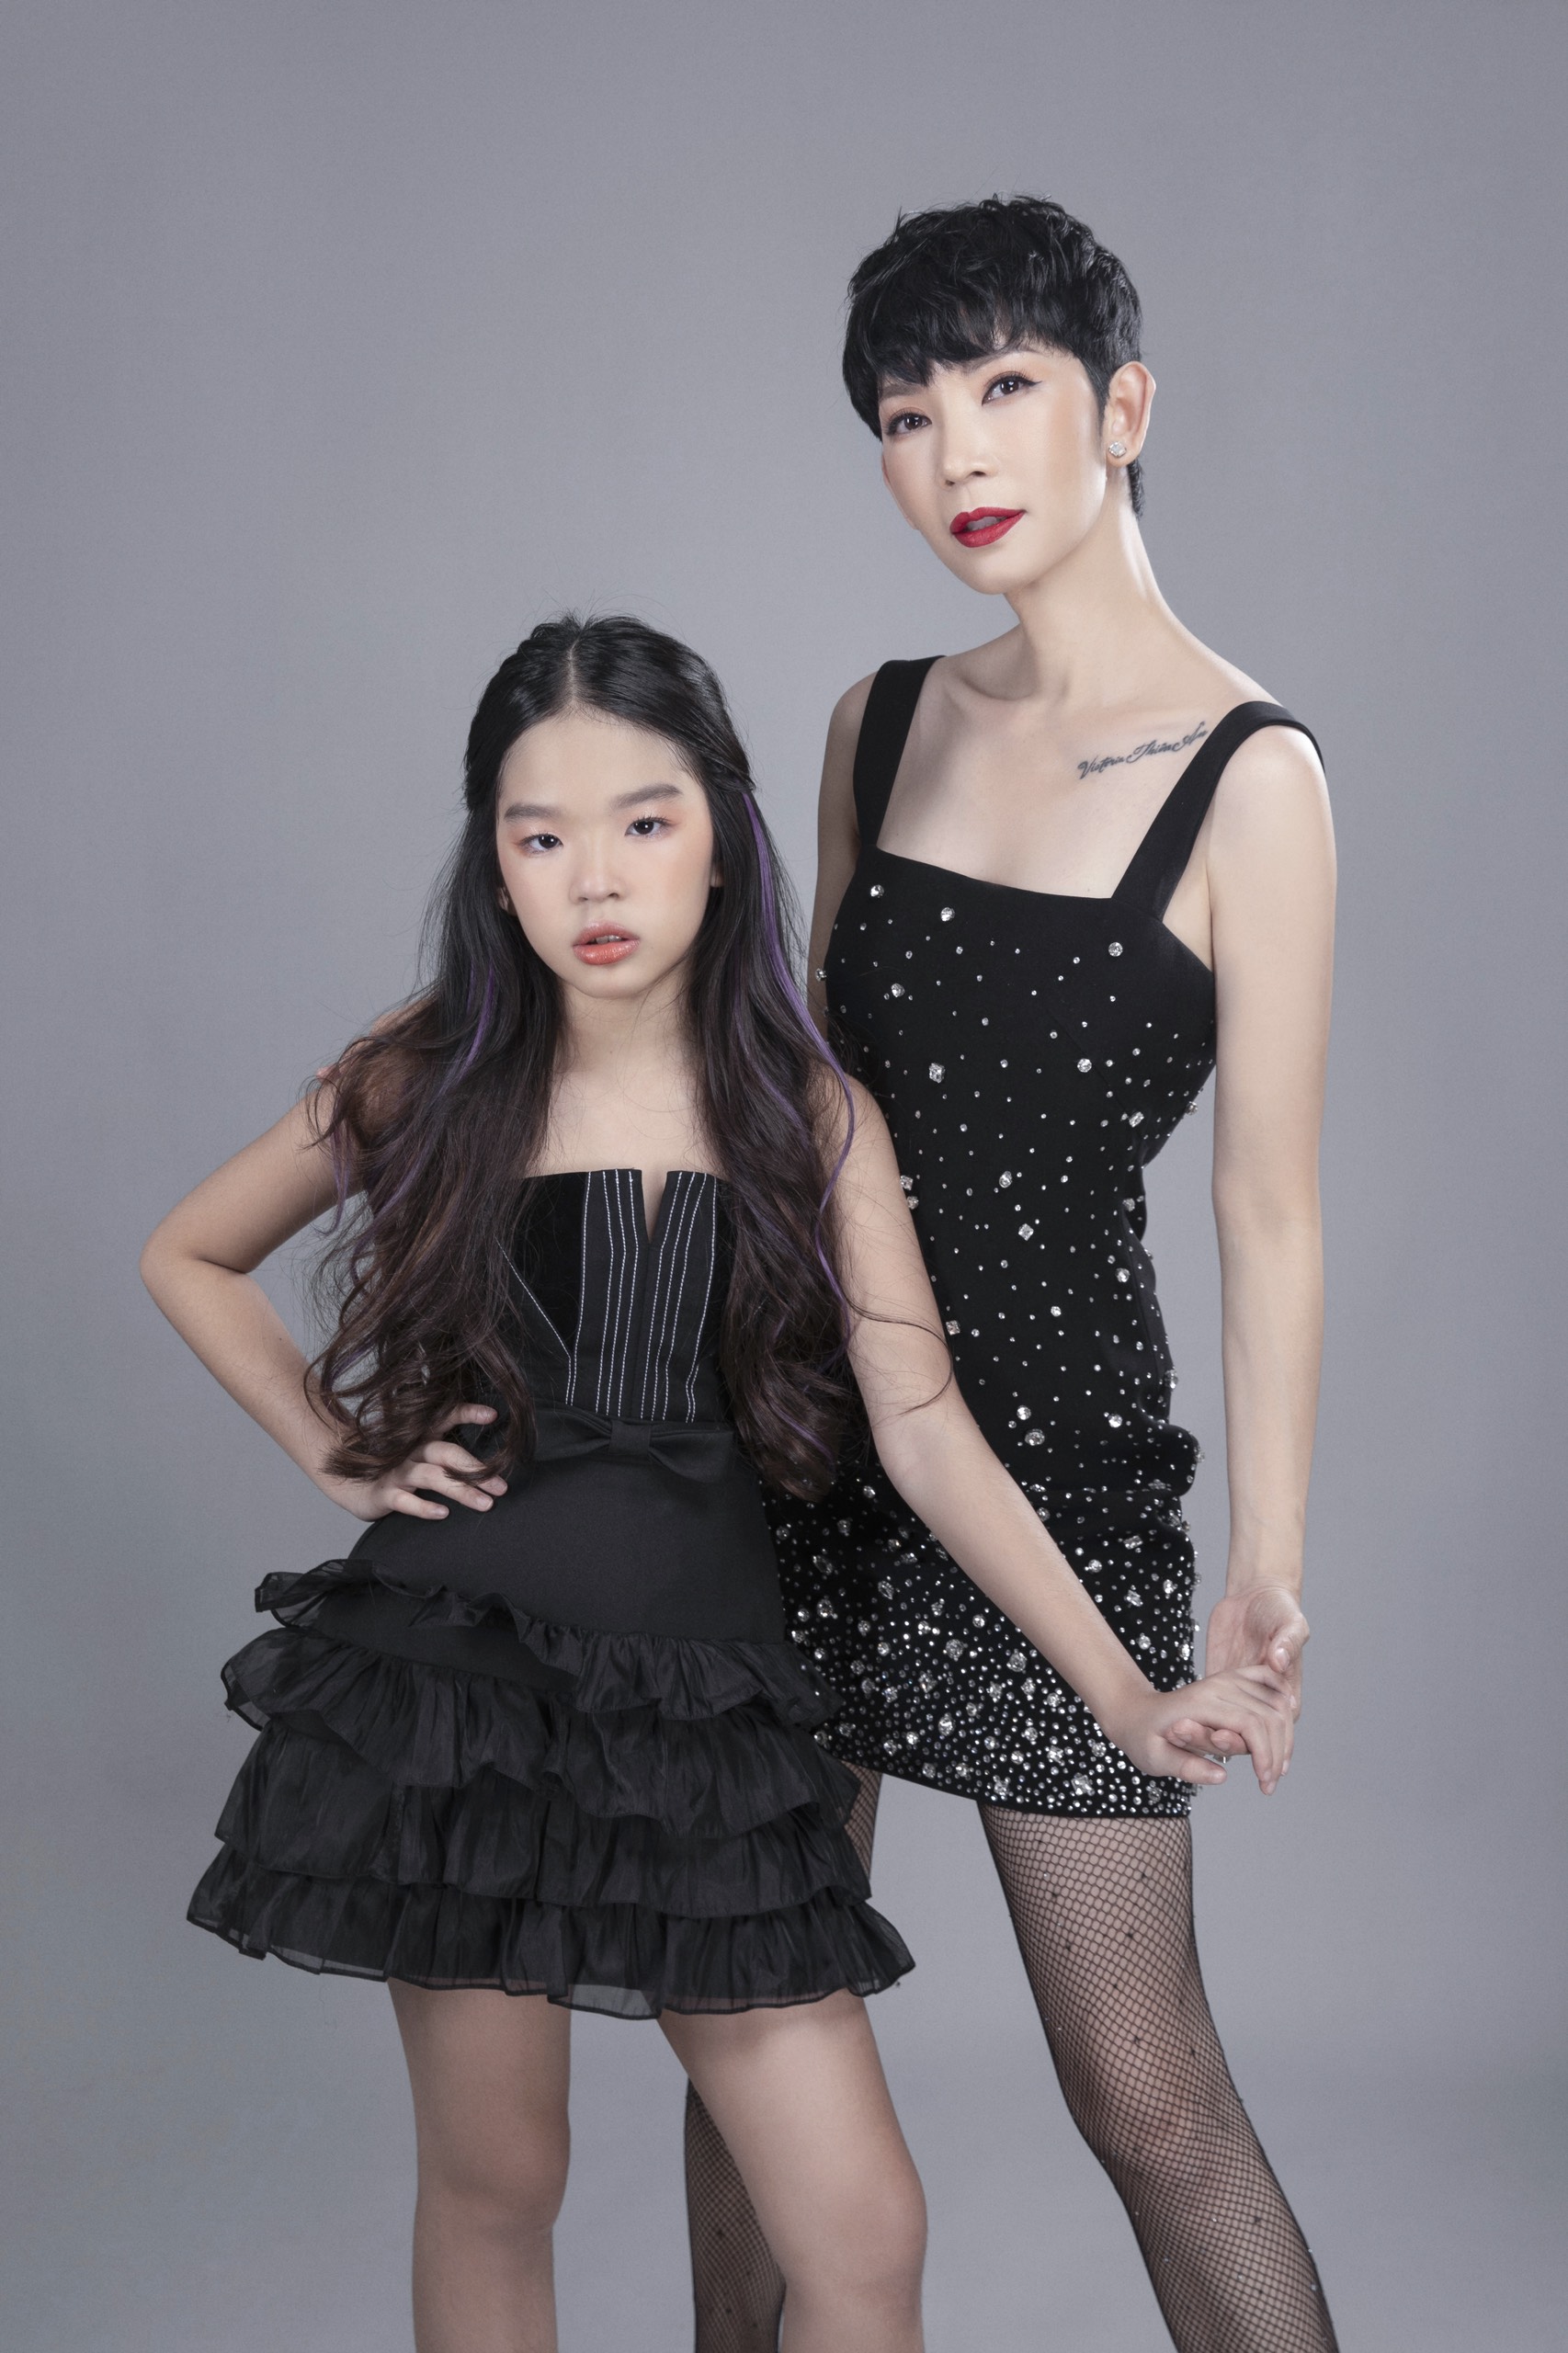 400 mẫu nhí sẽ trình diễn trong show thời trang trẻ em lớn nhất Việt Nam do Siêu mẫu Xuân Lan tổ chức - ảnh 2